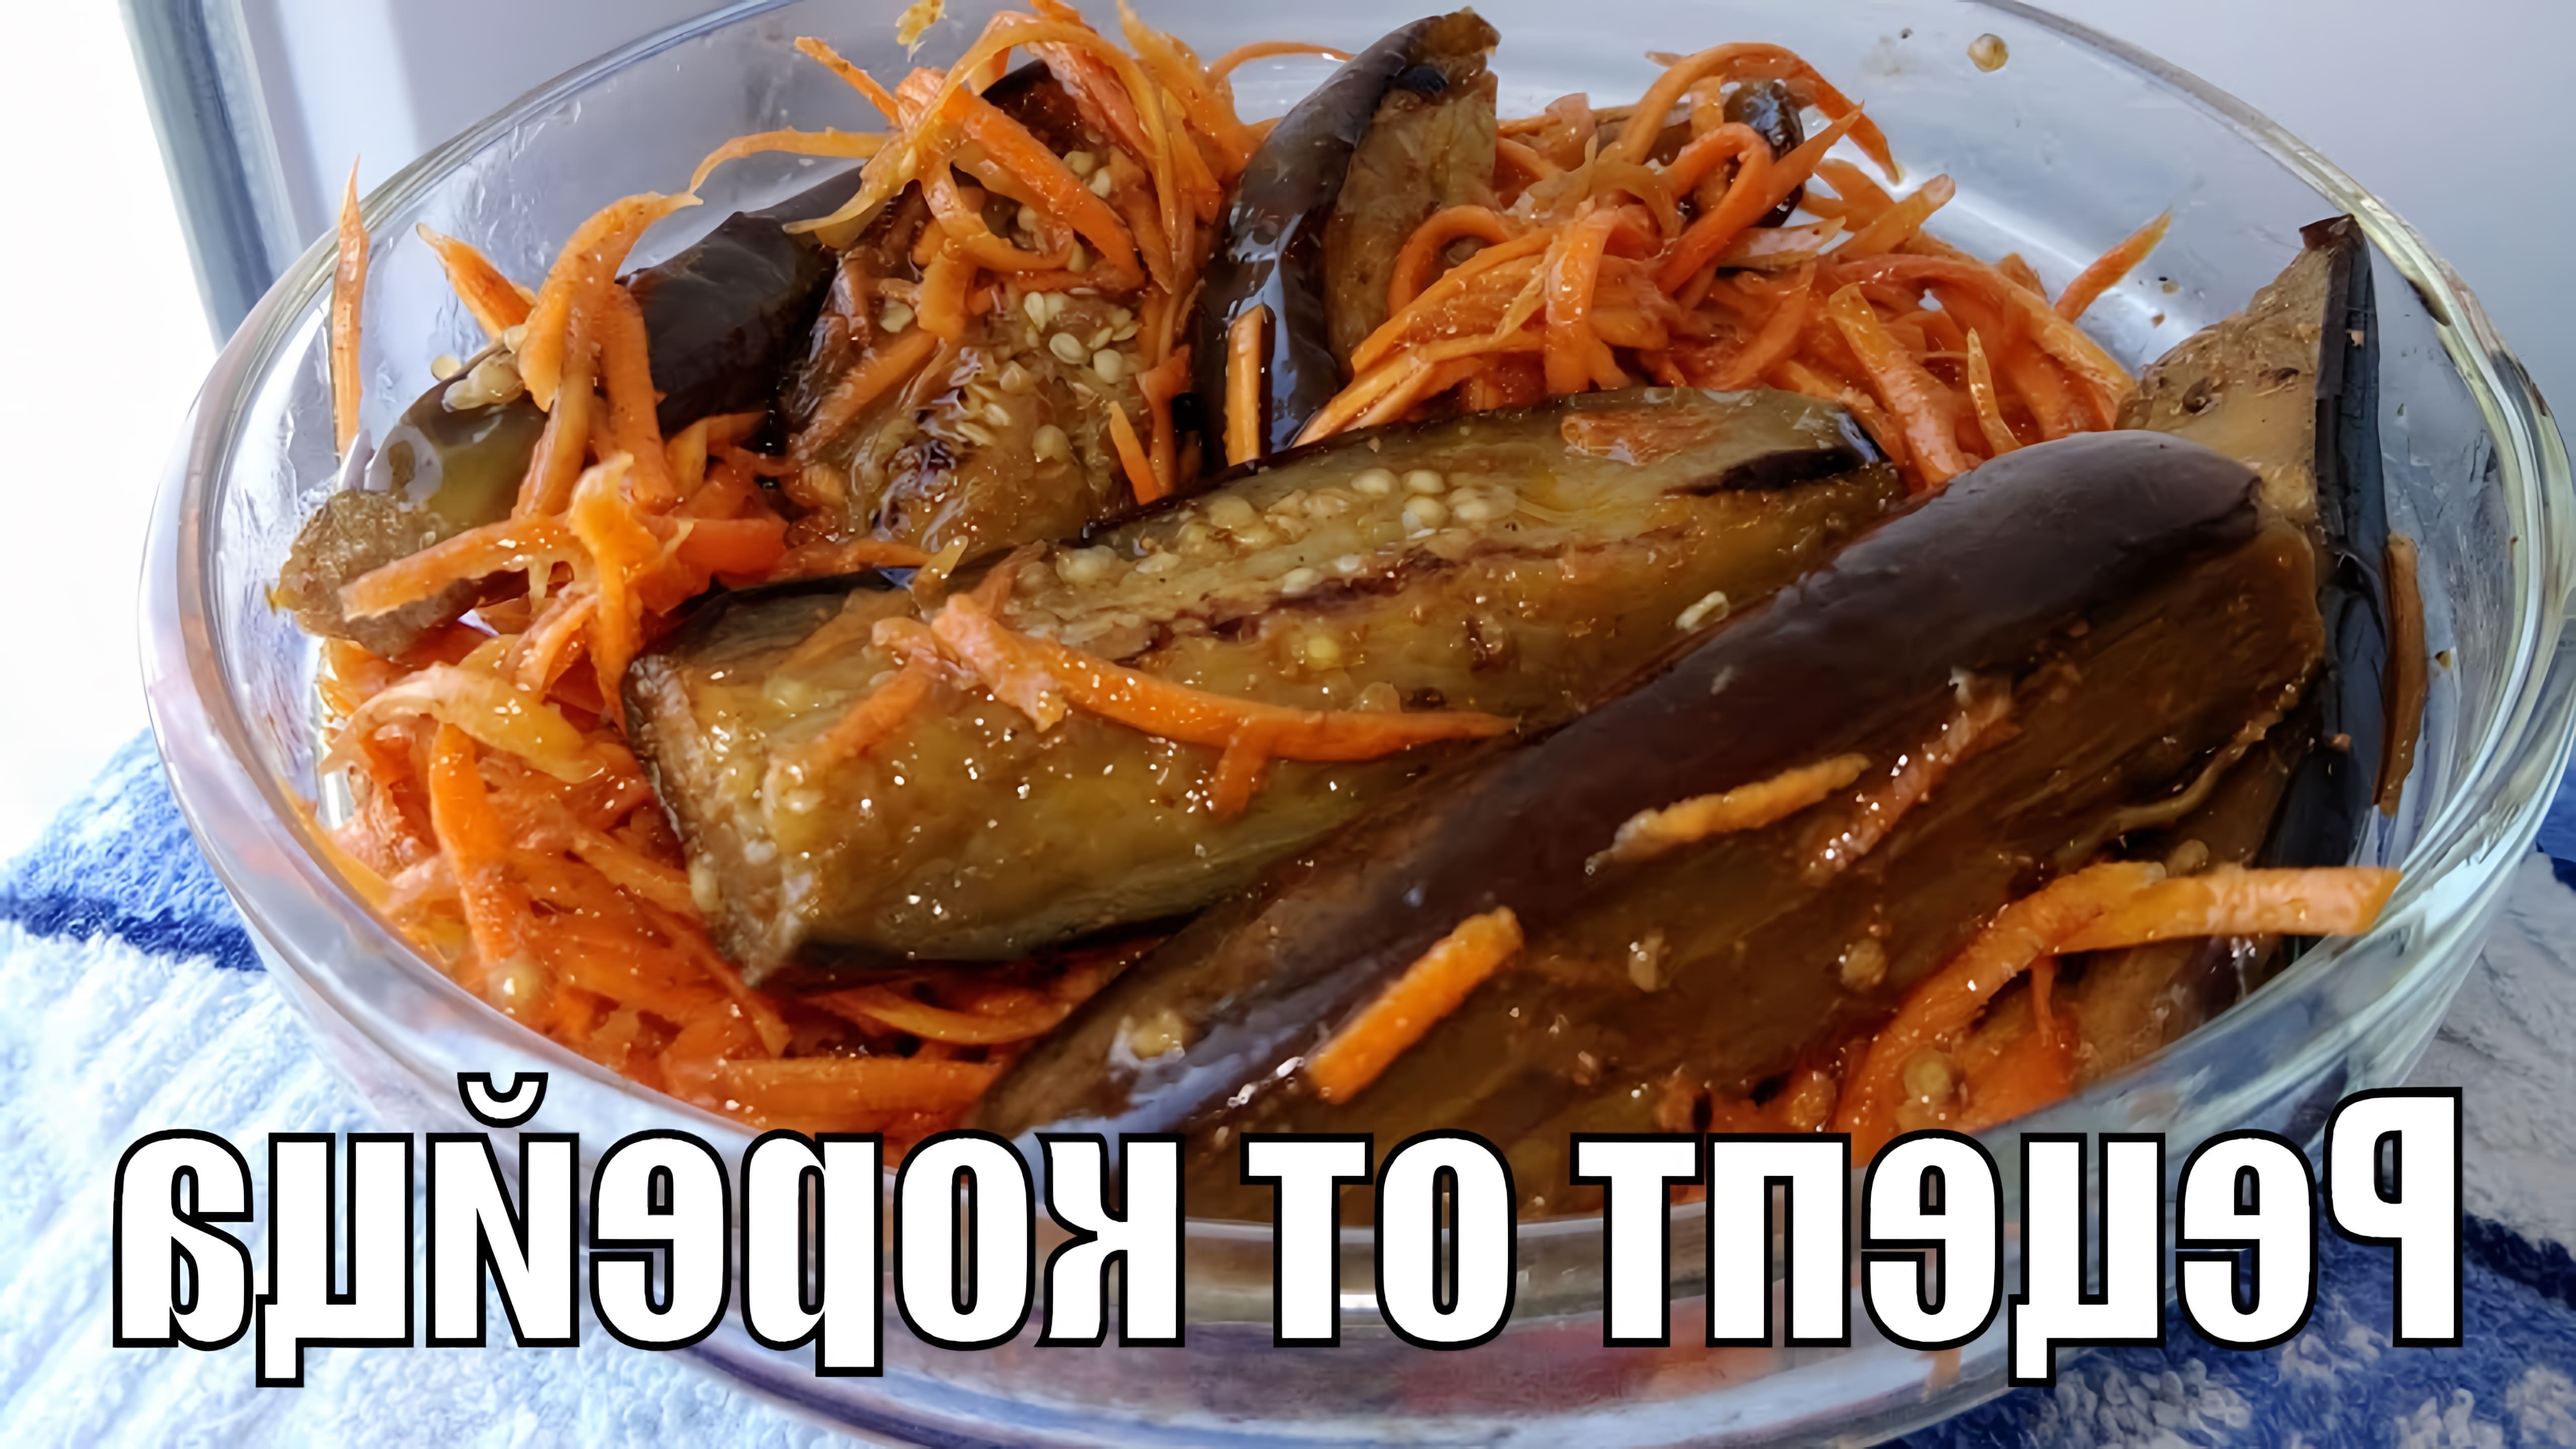 В этом видео демонстрируется рецепт острой закуски из баклажанов с морковью по-корейски